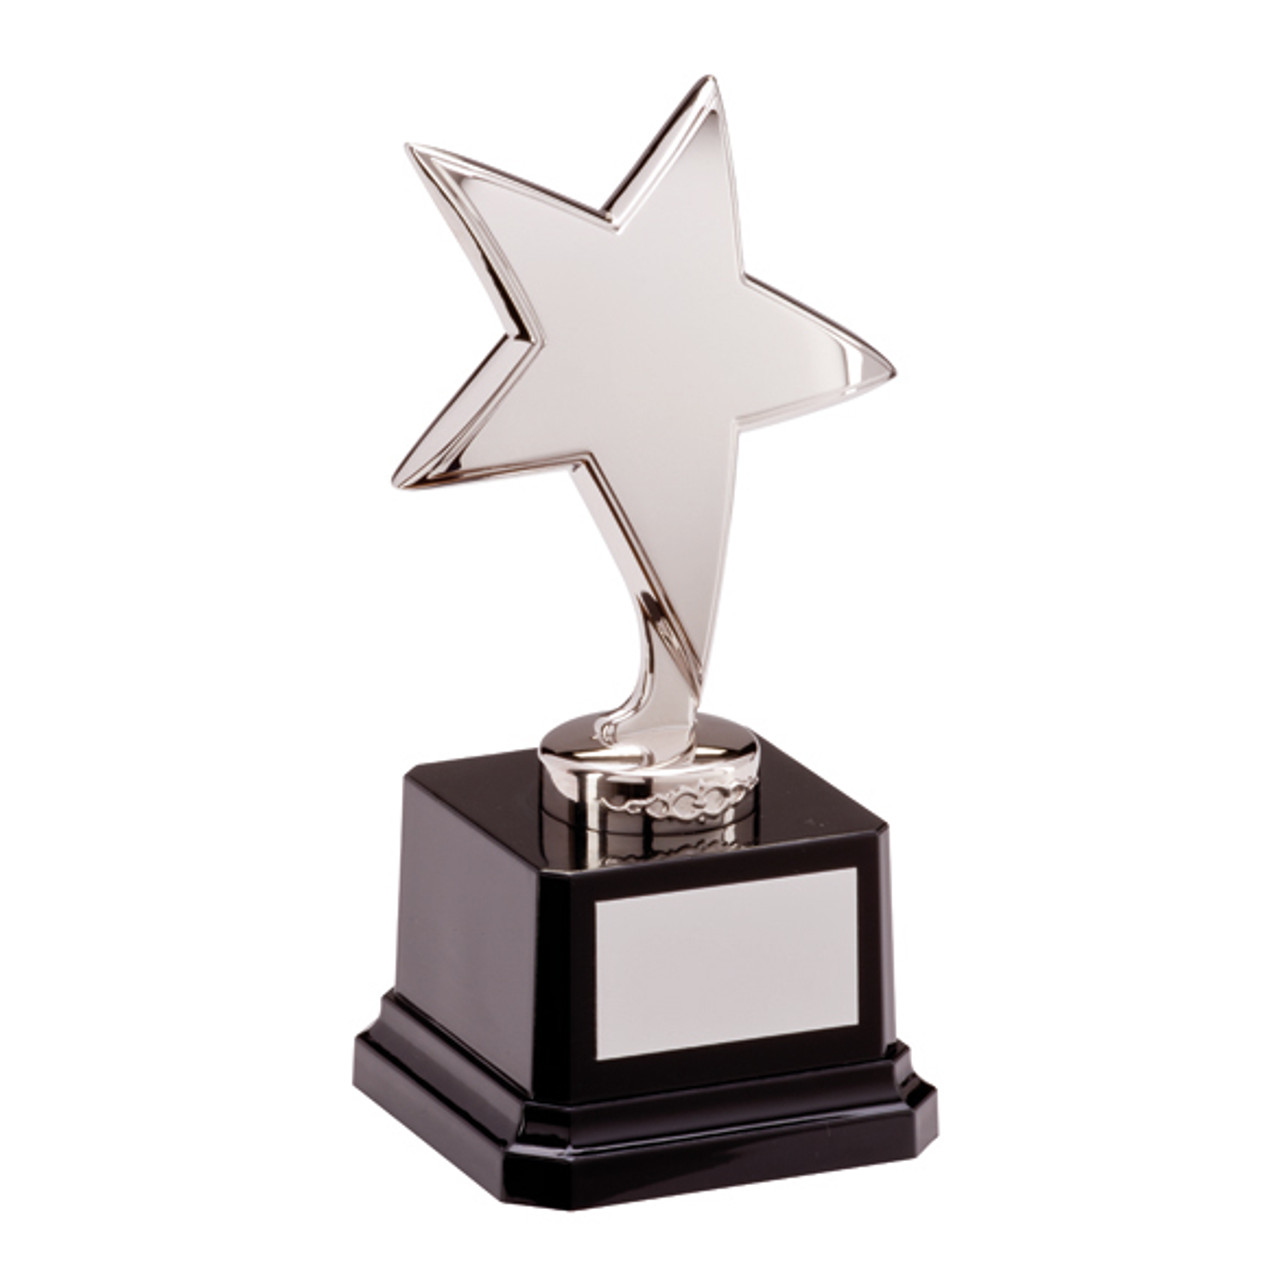 Stunning Challenger silver star achievement Award best seller great price